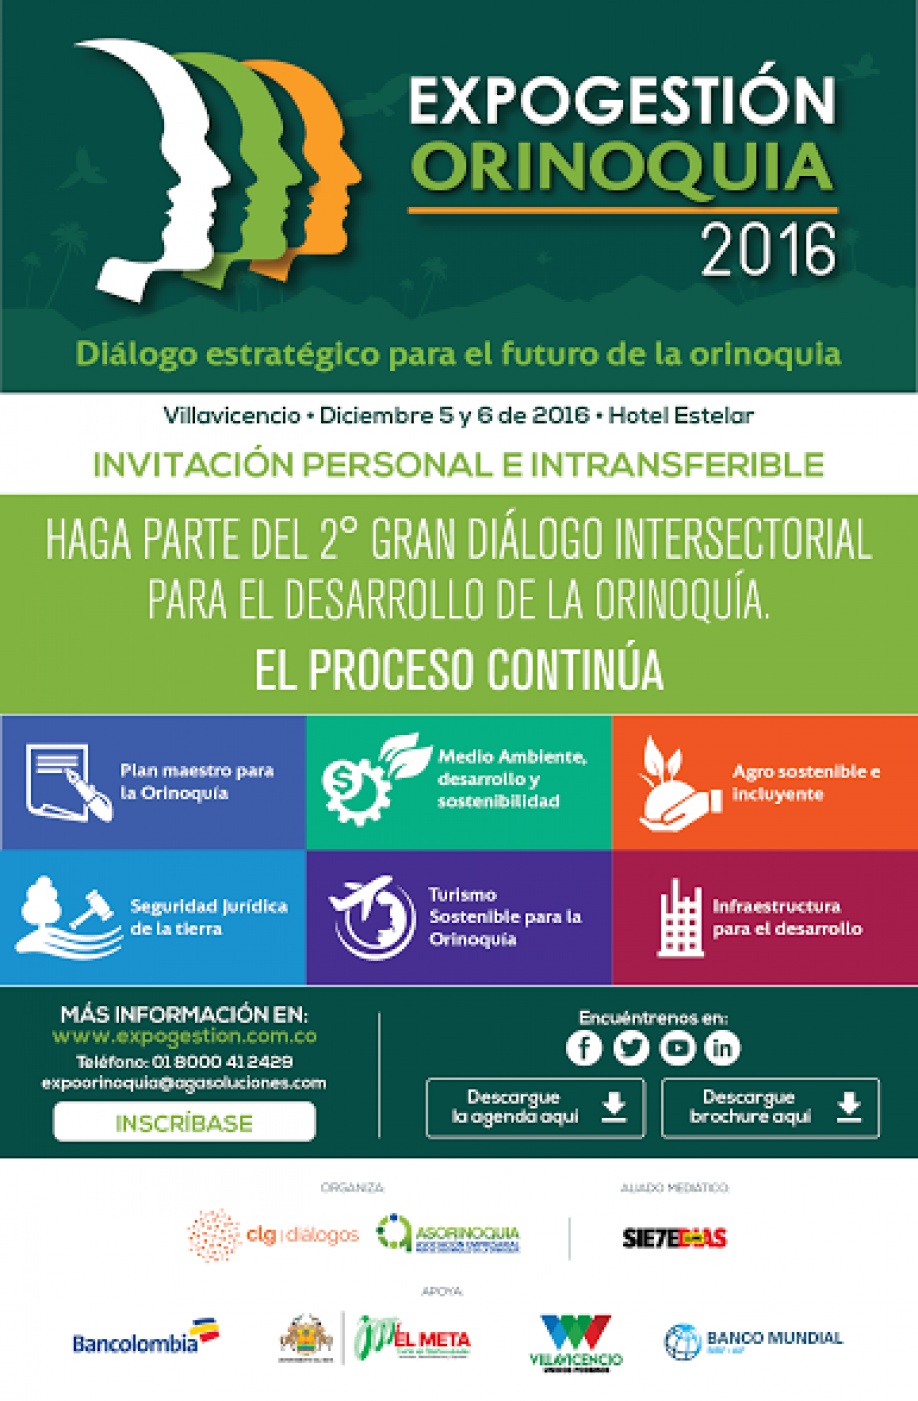 Inició Expogestión Orinoquia 2016 en Villavicencio 1